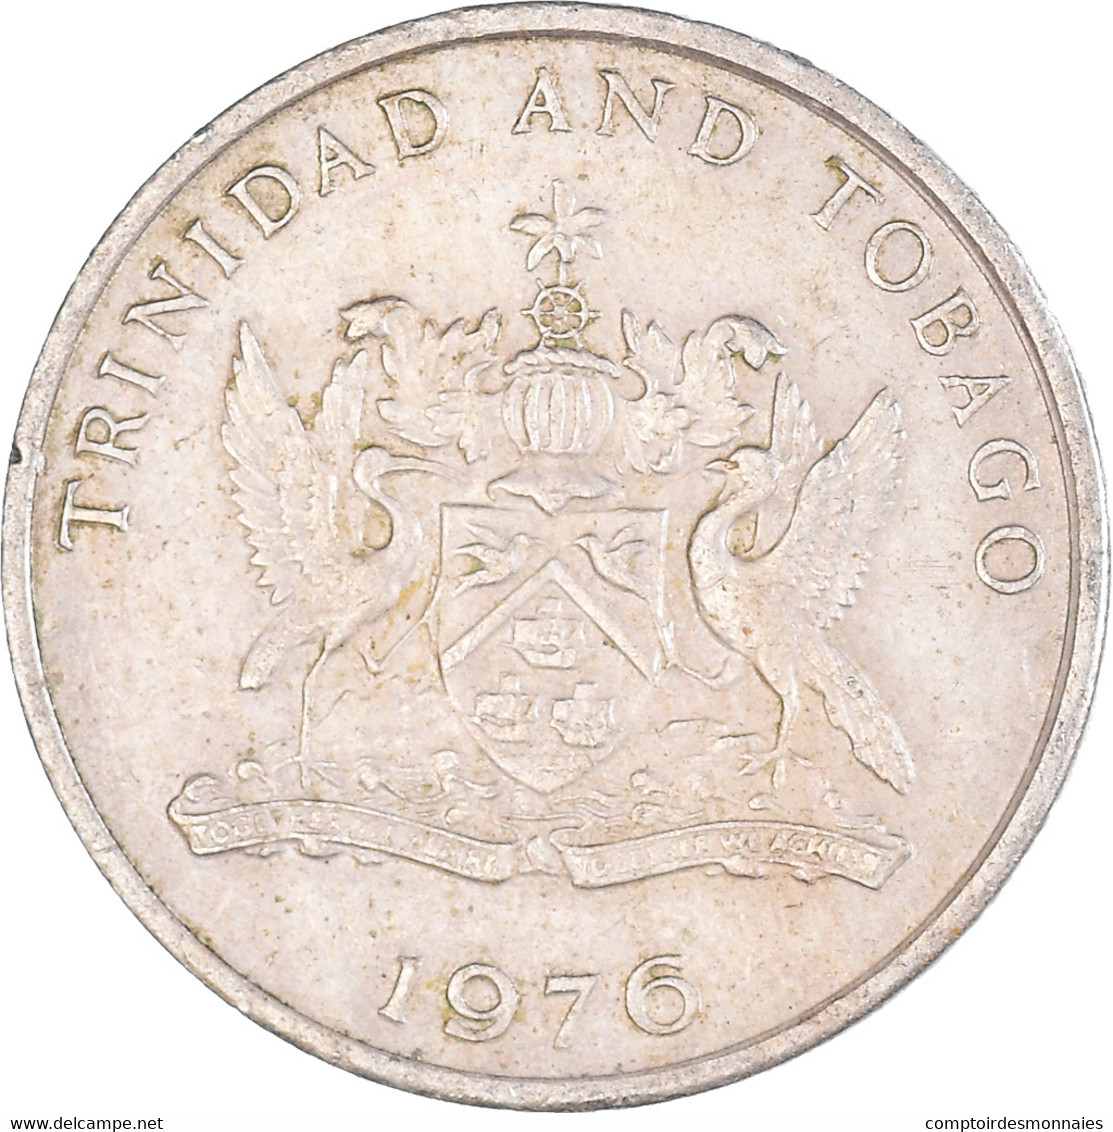 Monnaie, Trinité-et-Tobago, 25 Cents, 1976 - Trinidad & Tobago